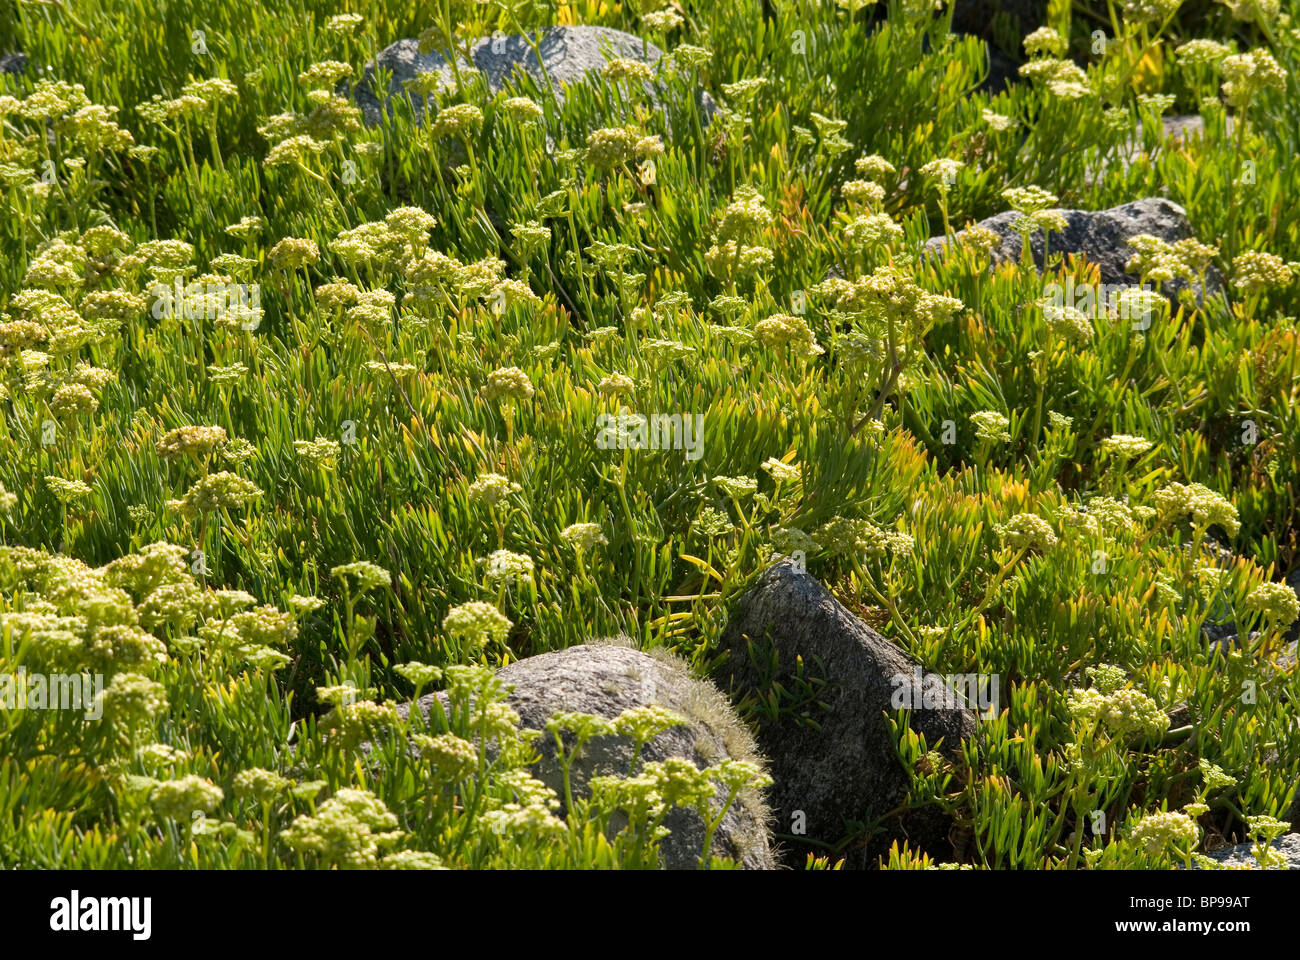 Samphire or Sea fennel (Crithmum maritimum) Stock Photo